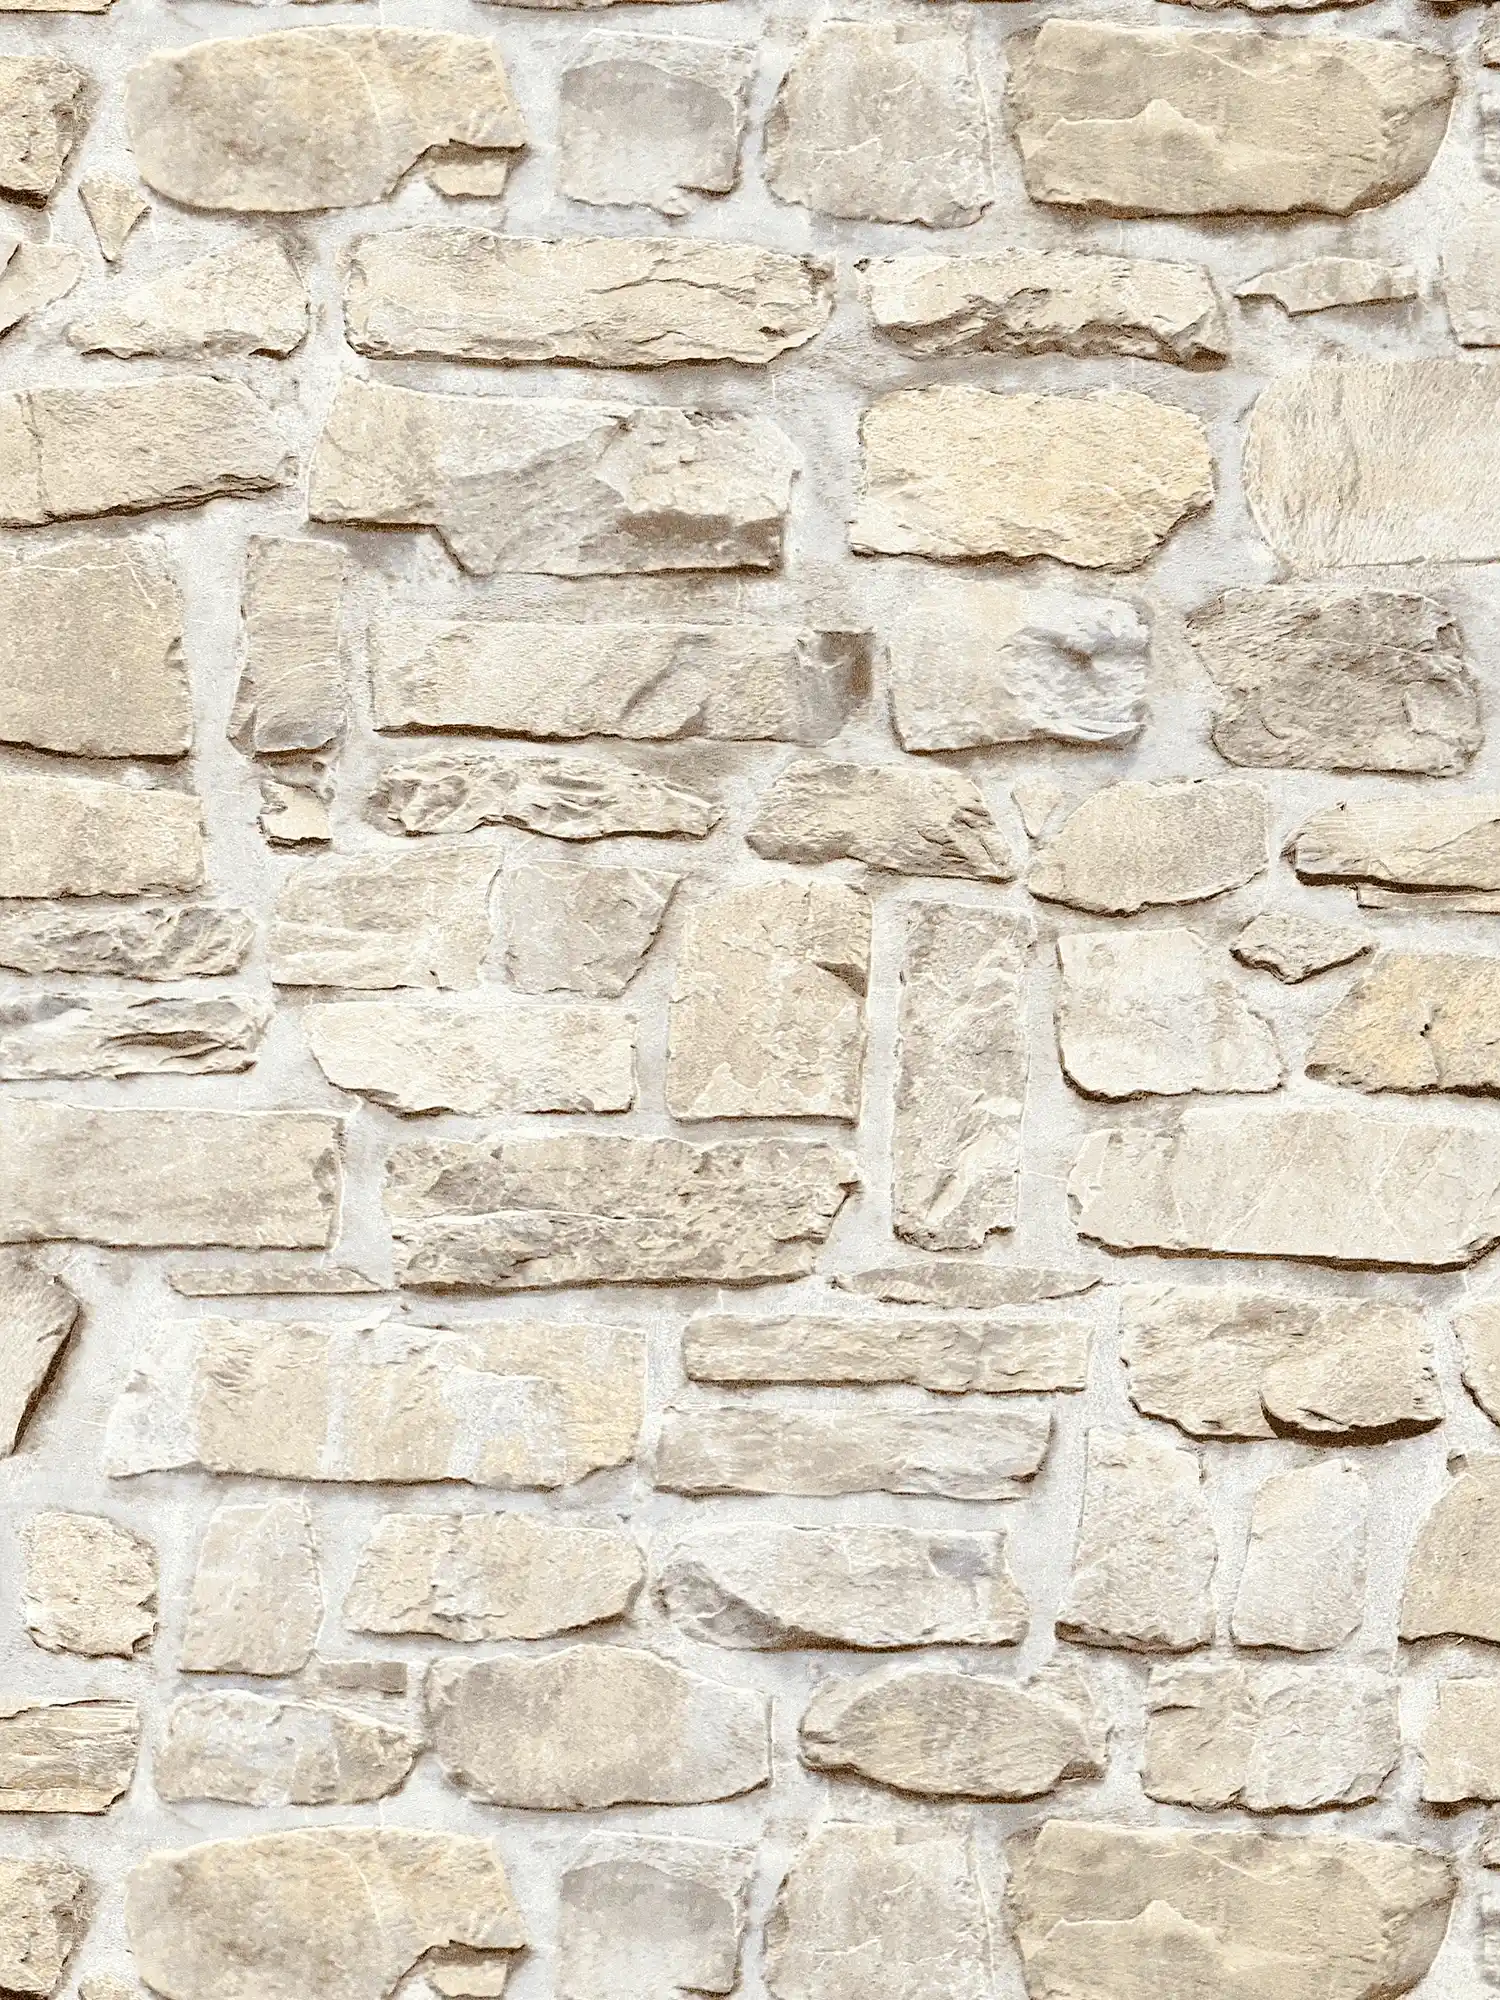         Steintapete mit Naturstein-Mauerwerk im Landhaus Stil – Beige, Gelb
    